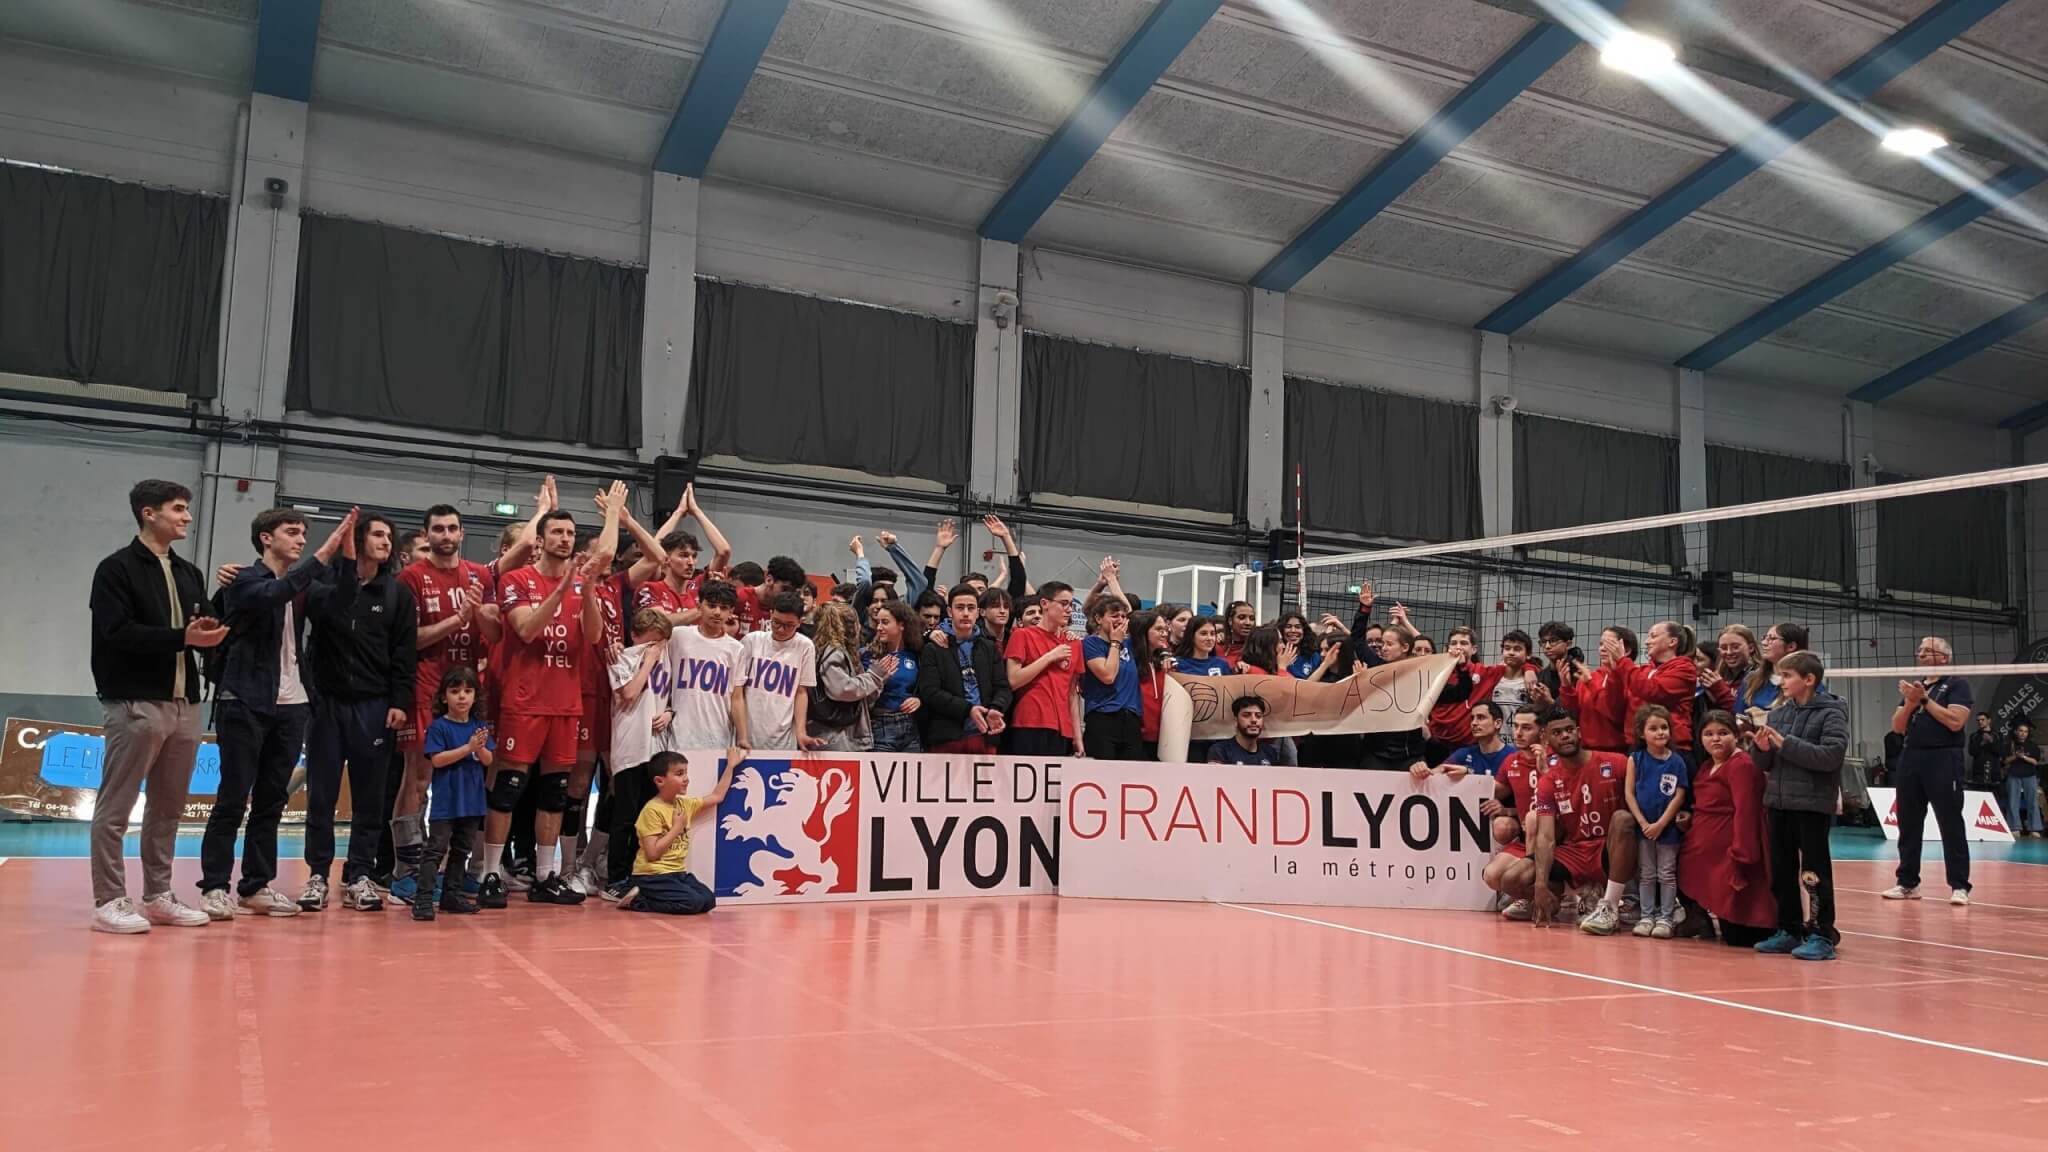 L’ASUL Lyon, le club mythique de volley en sursis